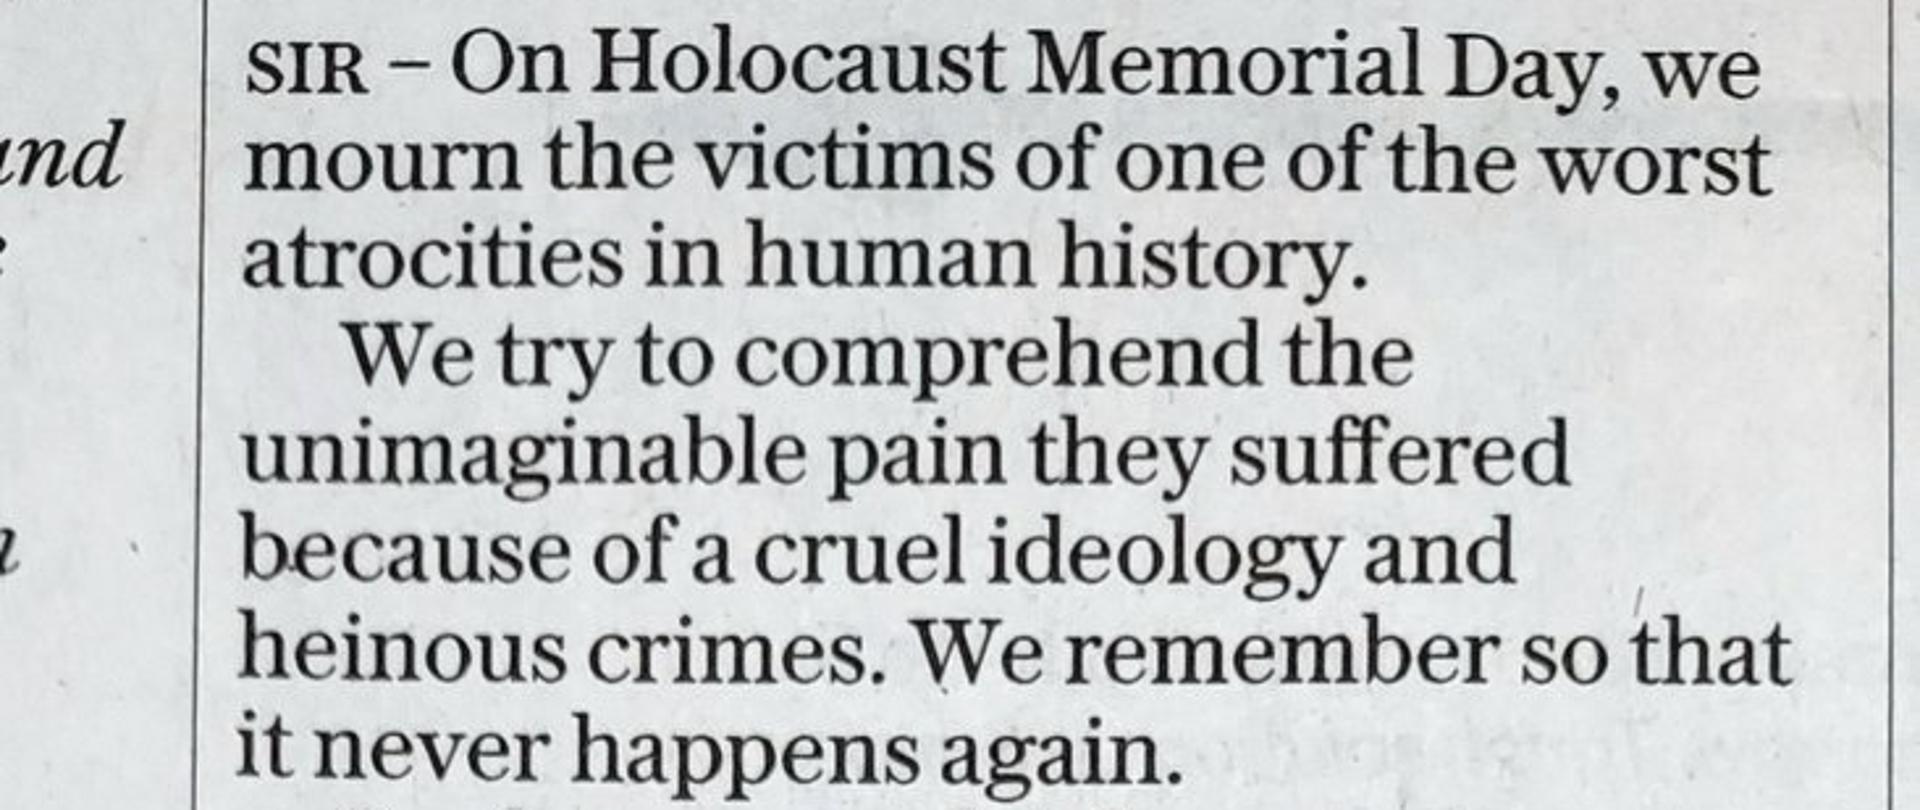 Ambasador RP w Londynie Piotr Wilczek w The Daily Telegraph nt. Międzynarodowego Dnia Pamięci o Ofiarach Holokaustu